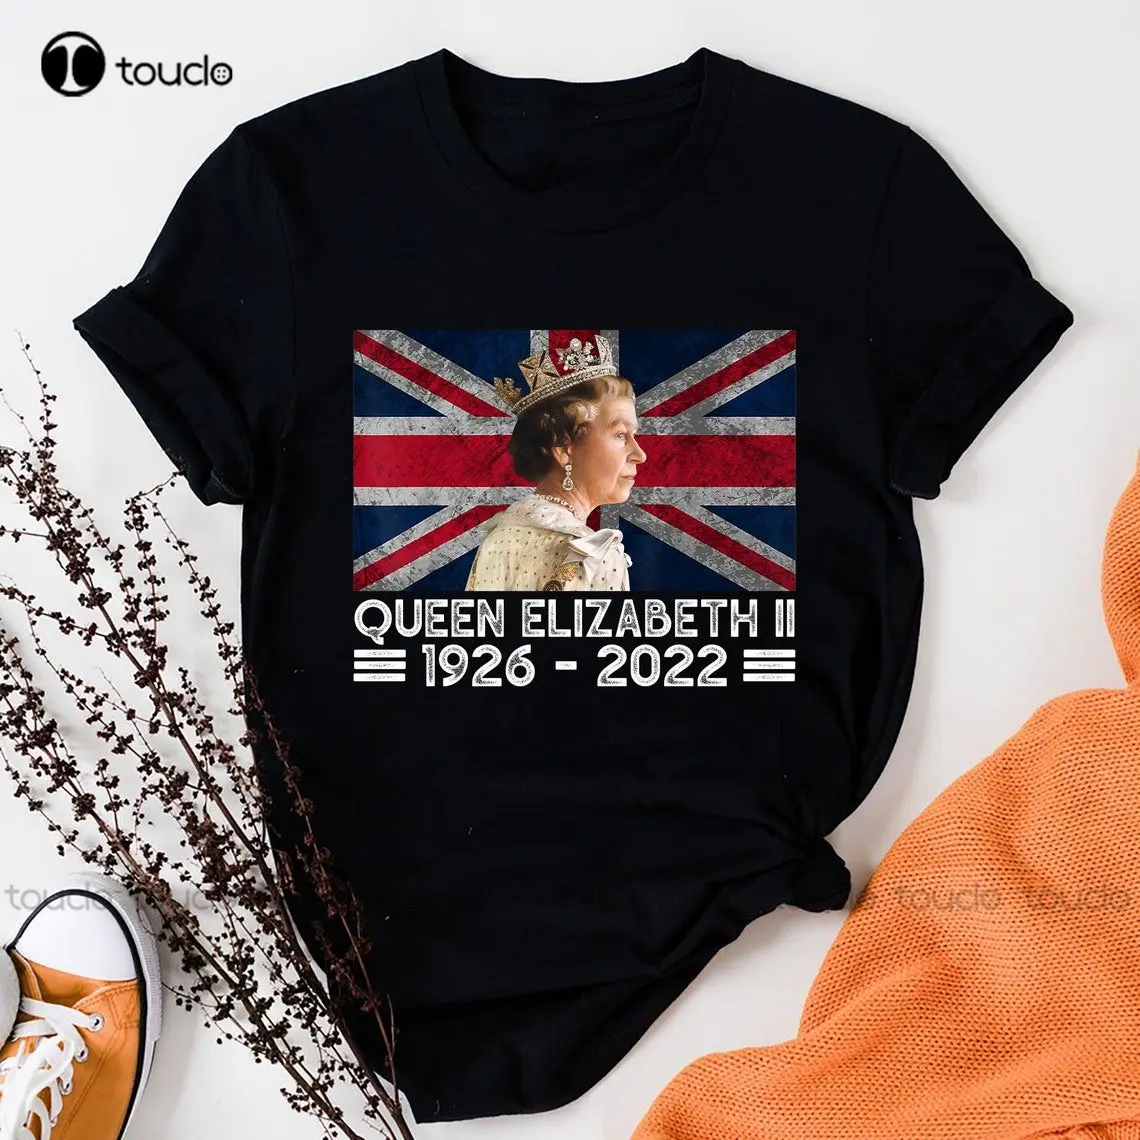 

Elizabeth Ii Queen Shirt, Rip Elizabeth Queen 1926-2022 Shirt, Rip Queen Shirt ,Royal Commemorative Tee Shirt Xs-5Xl Unisex